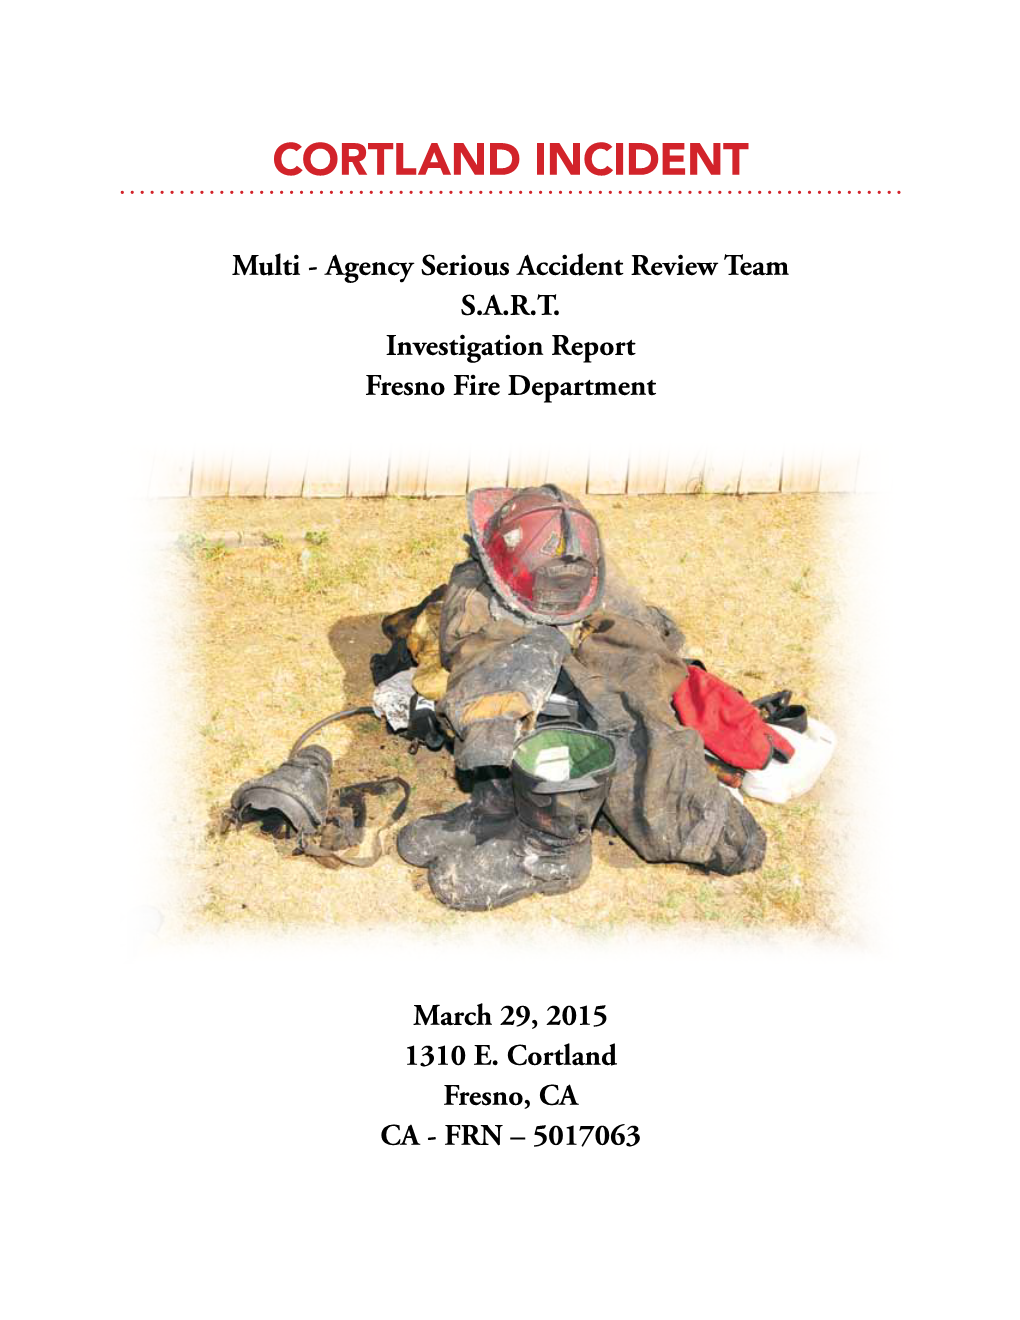 Courtland Incidents SART Report